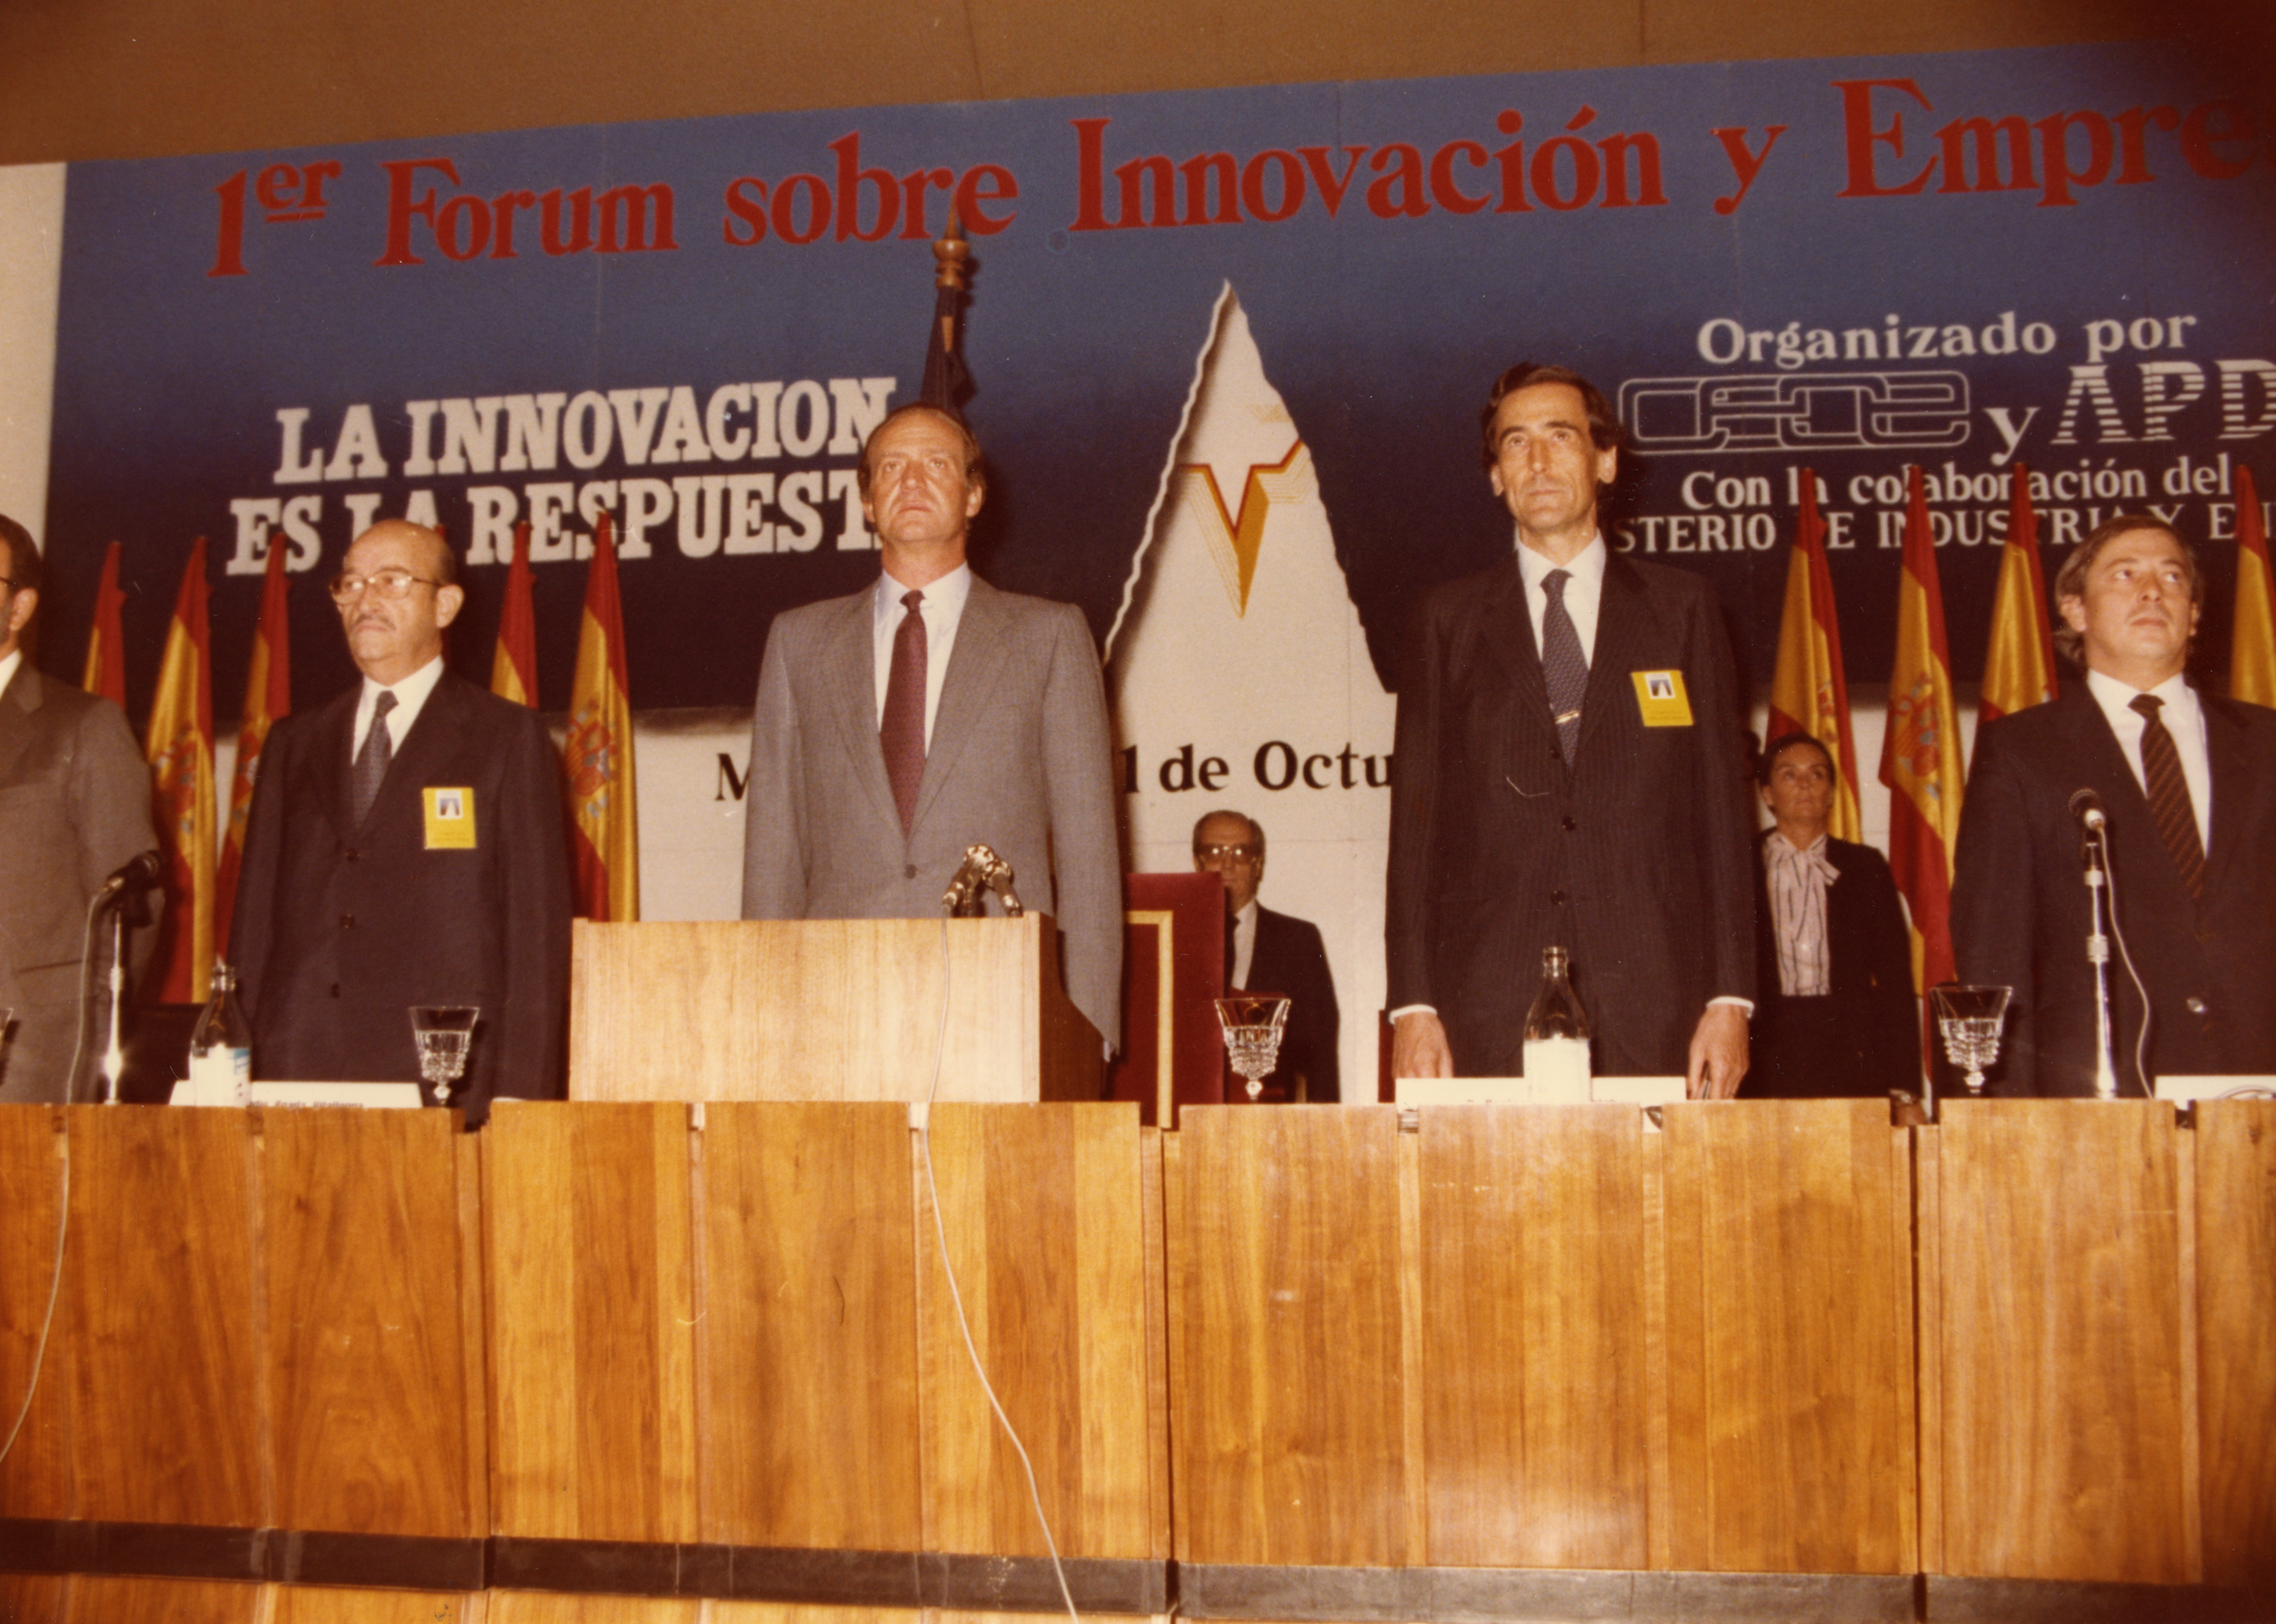 Mesa presidencial del Primer Forum sobre Innovación y Empresa